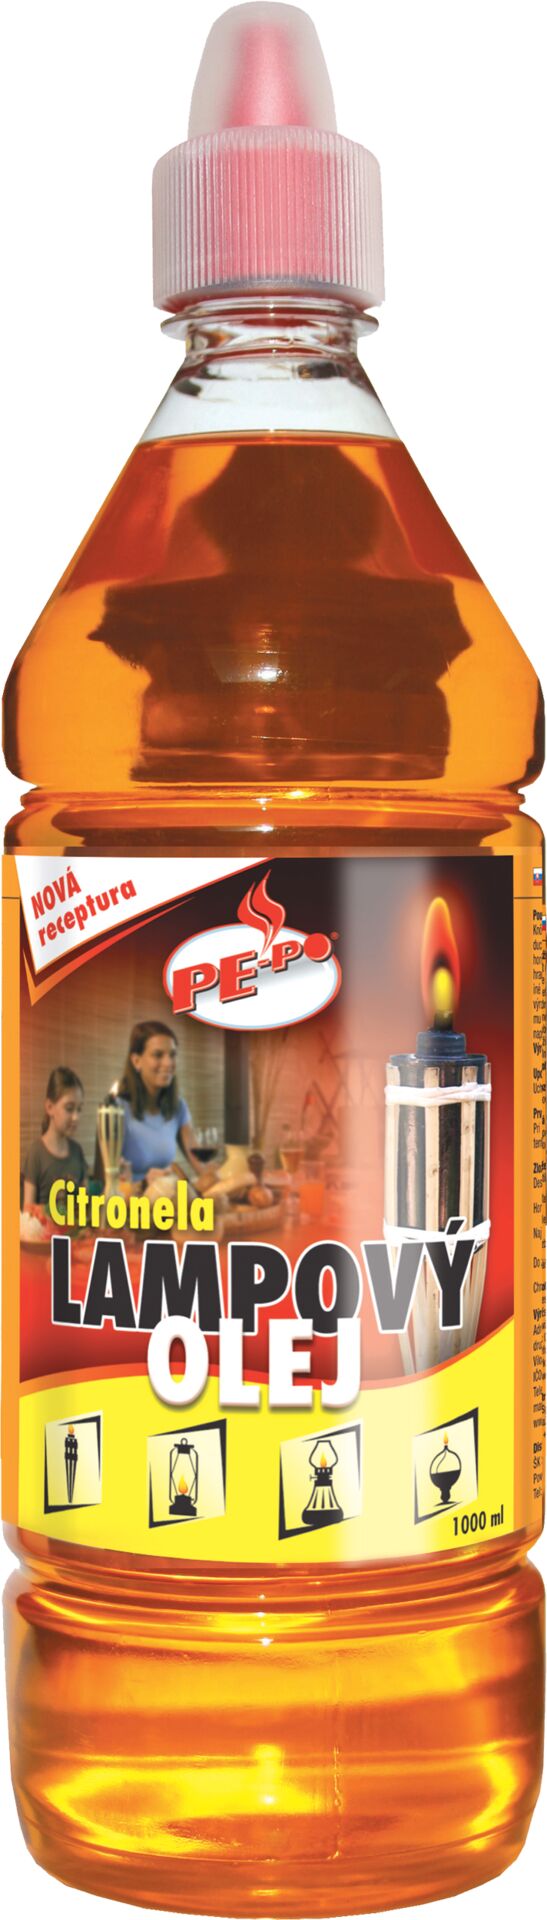 PE-PO olej lampový přírodní - 1 l citronela - 28ef20fc a757 4d99 be58 4c4cf38dd085